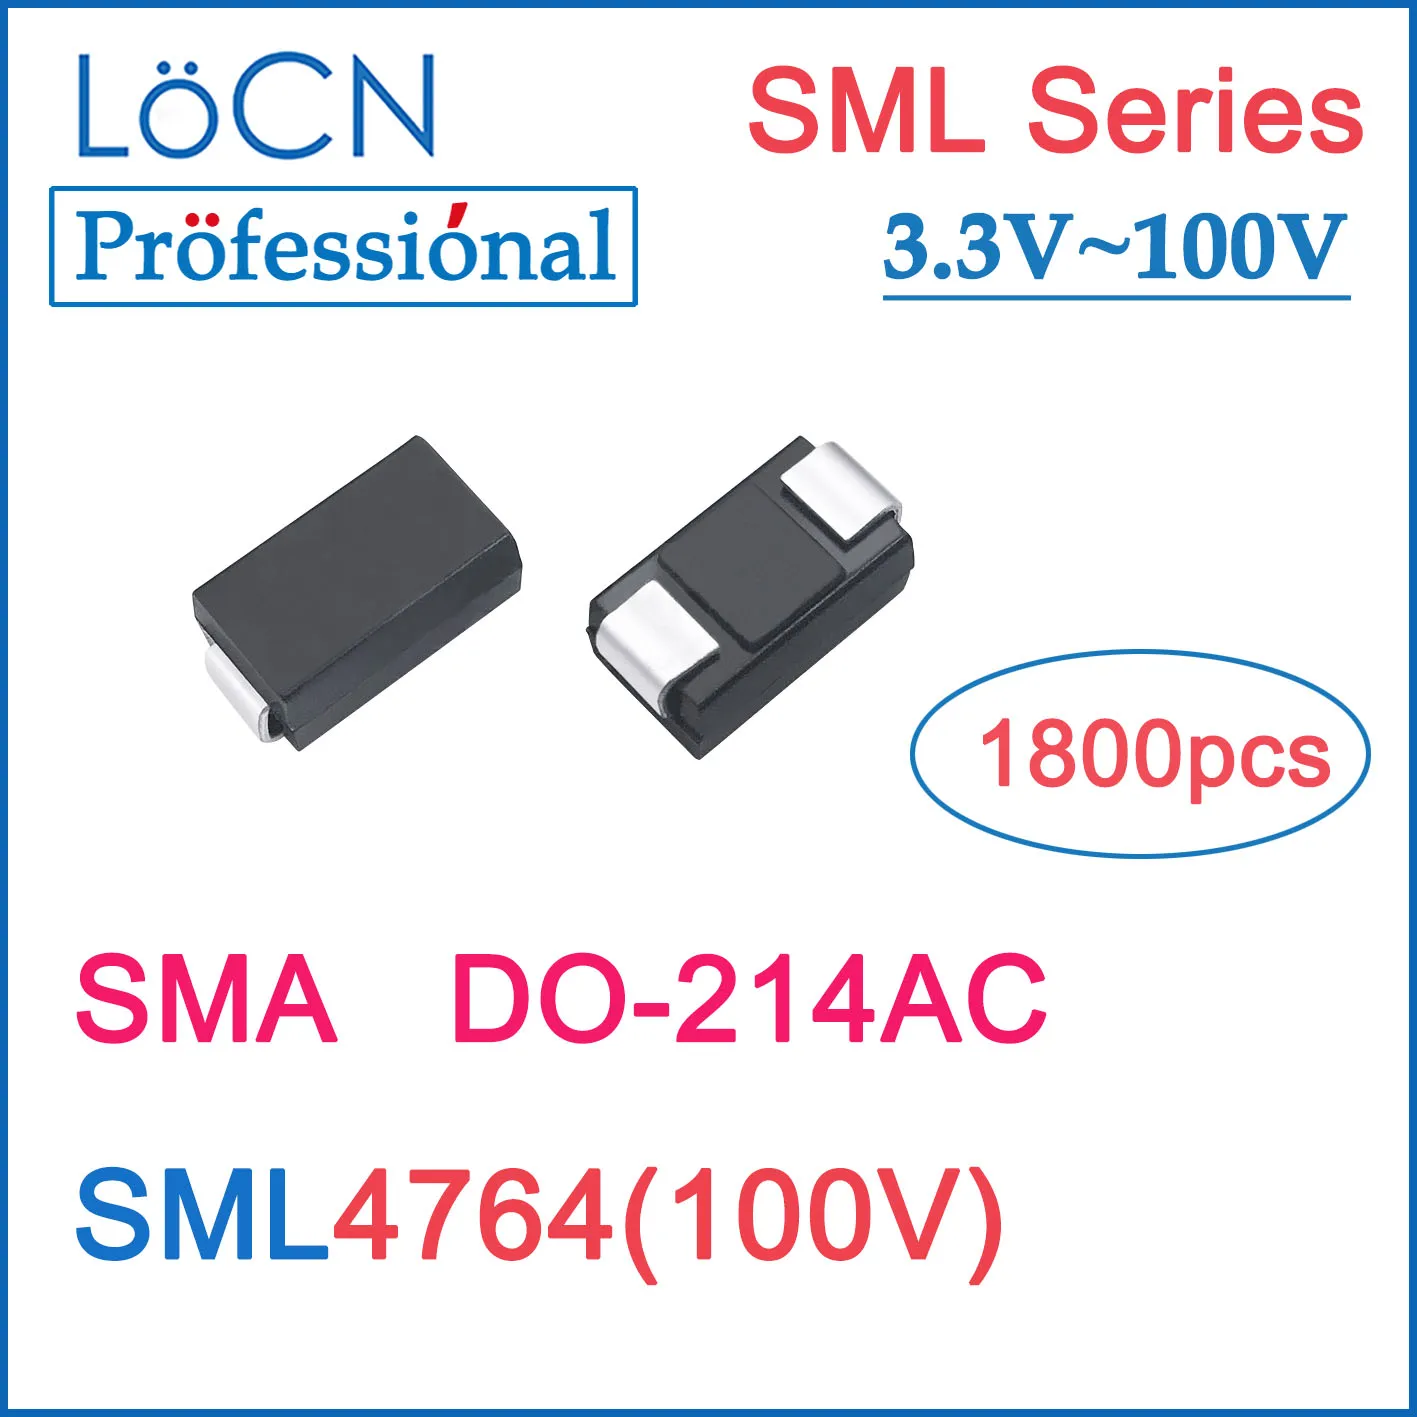 

LOCN 1800pcs SML SML4764 100V SMA DO-214AC SMD High Quality 1N4764 TVS Diode 100V